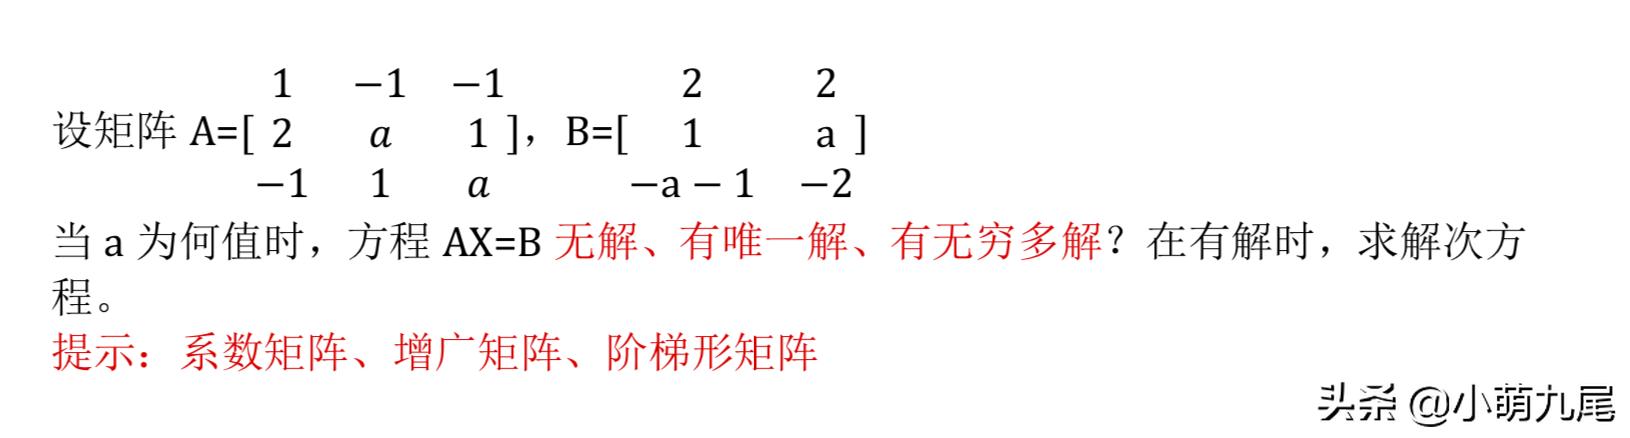 线性代数中矩阵的秩详解，以及它与非齐次线性方程组AX=B的关系